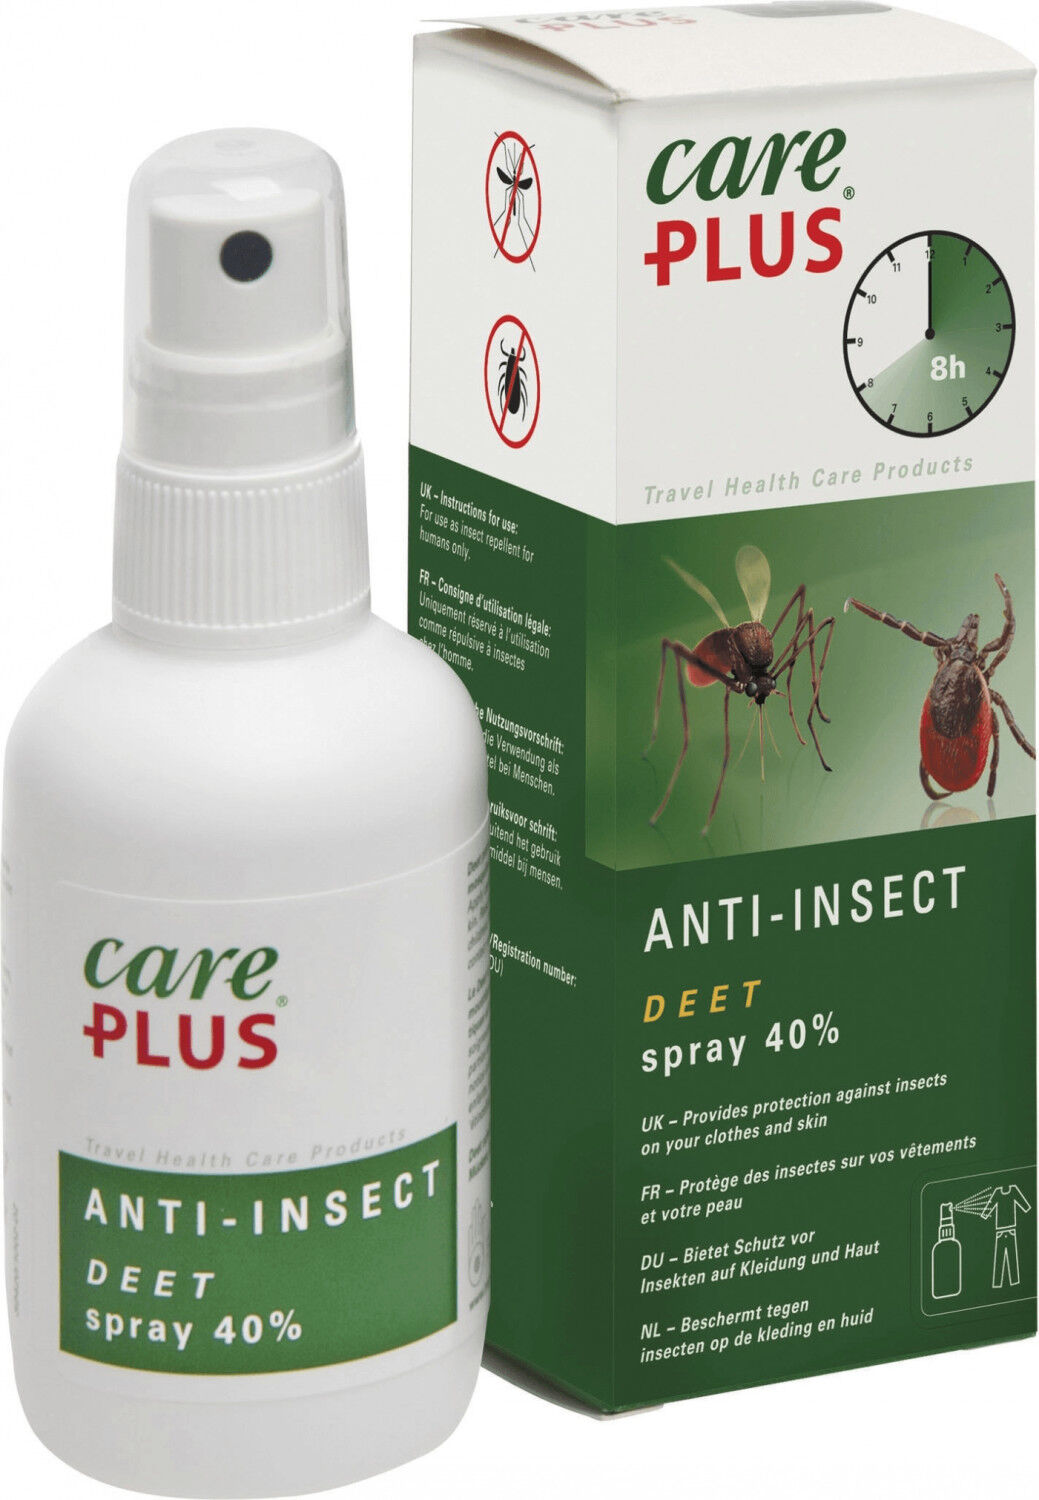 Care Plus Anti-Insect - Deet spray 40% - Protezioni contro gli insetti